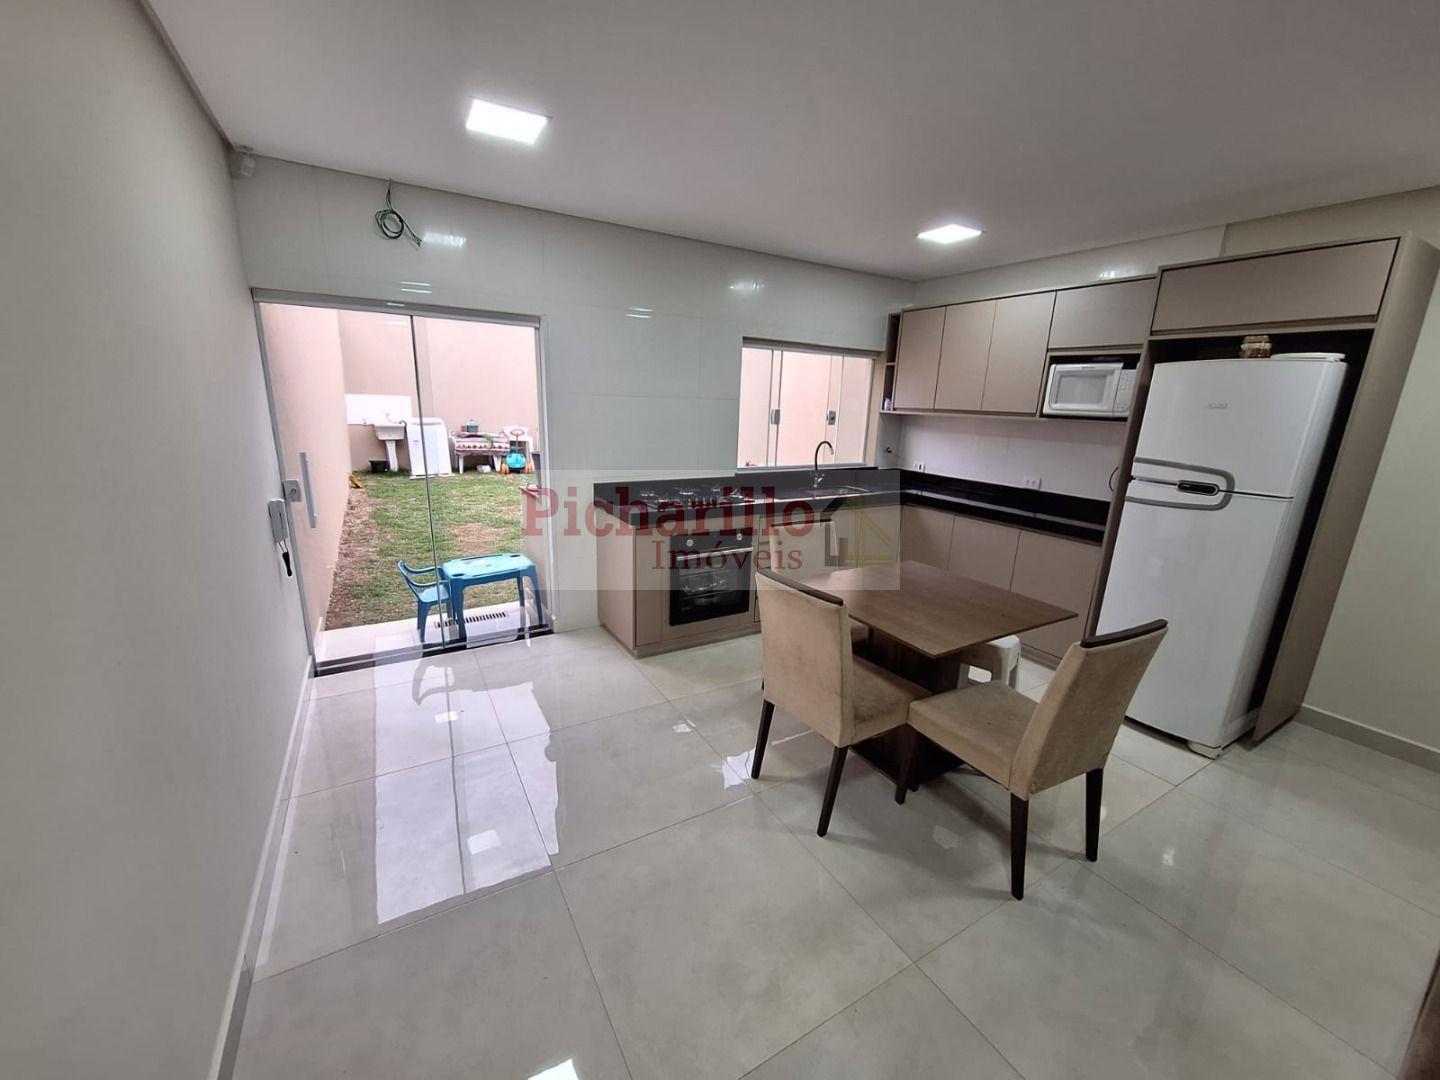 Casa com 3 dormitórios (1 suíte)  à venda, 180 m² - Jardim Nova São Carlos - São Carlos/SP